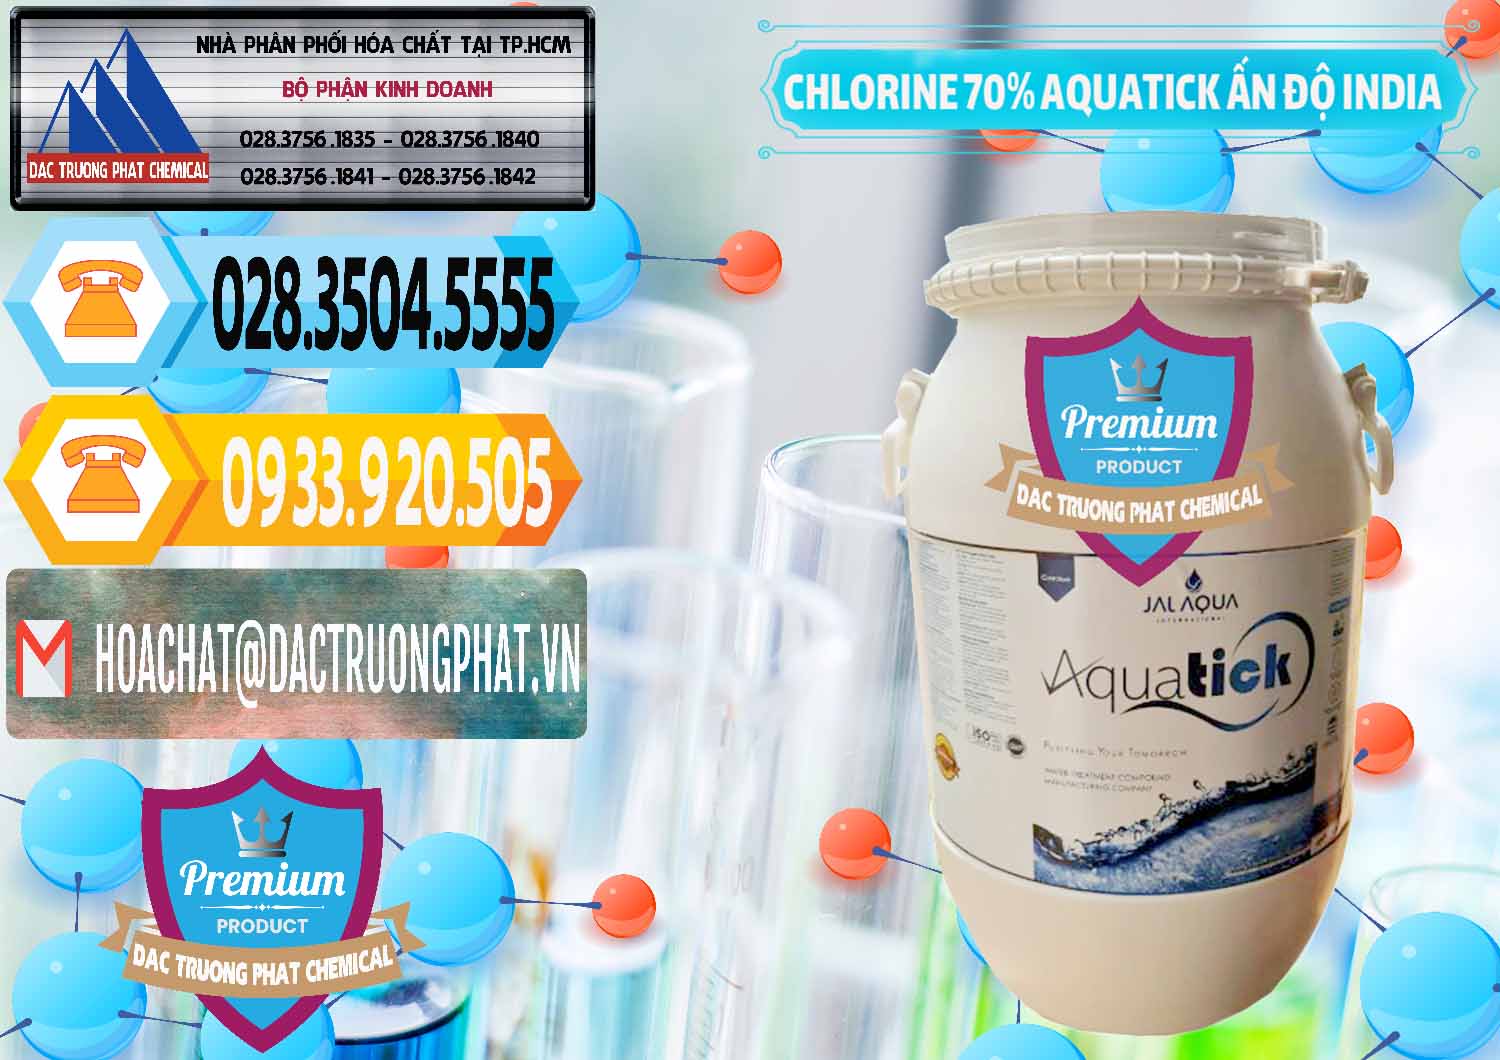 Cty bán _ cung cấp Chlorine – Clorin 70% Aquatick Jal Aqua Ấn Độ India - 0215 - Công ty chuyên cung cấp và bán hóa chất tại TP.HCM - hoachattayrua.net